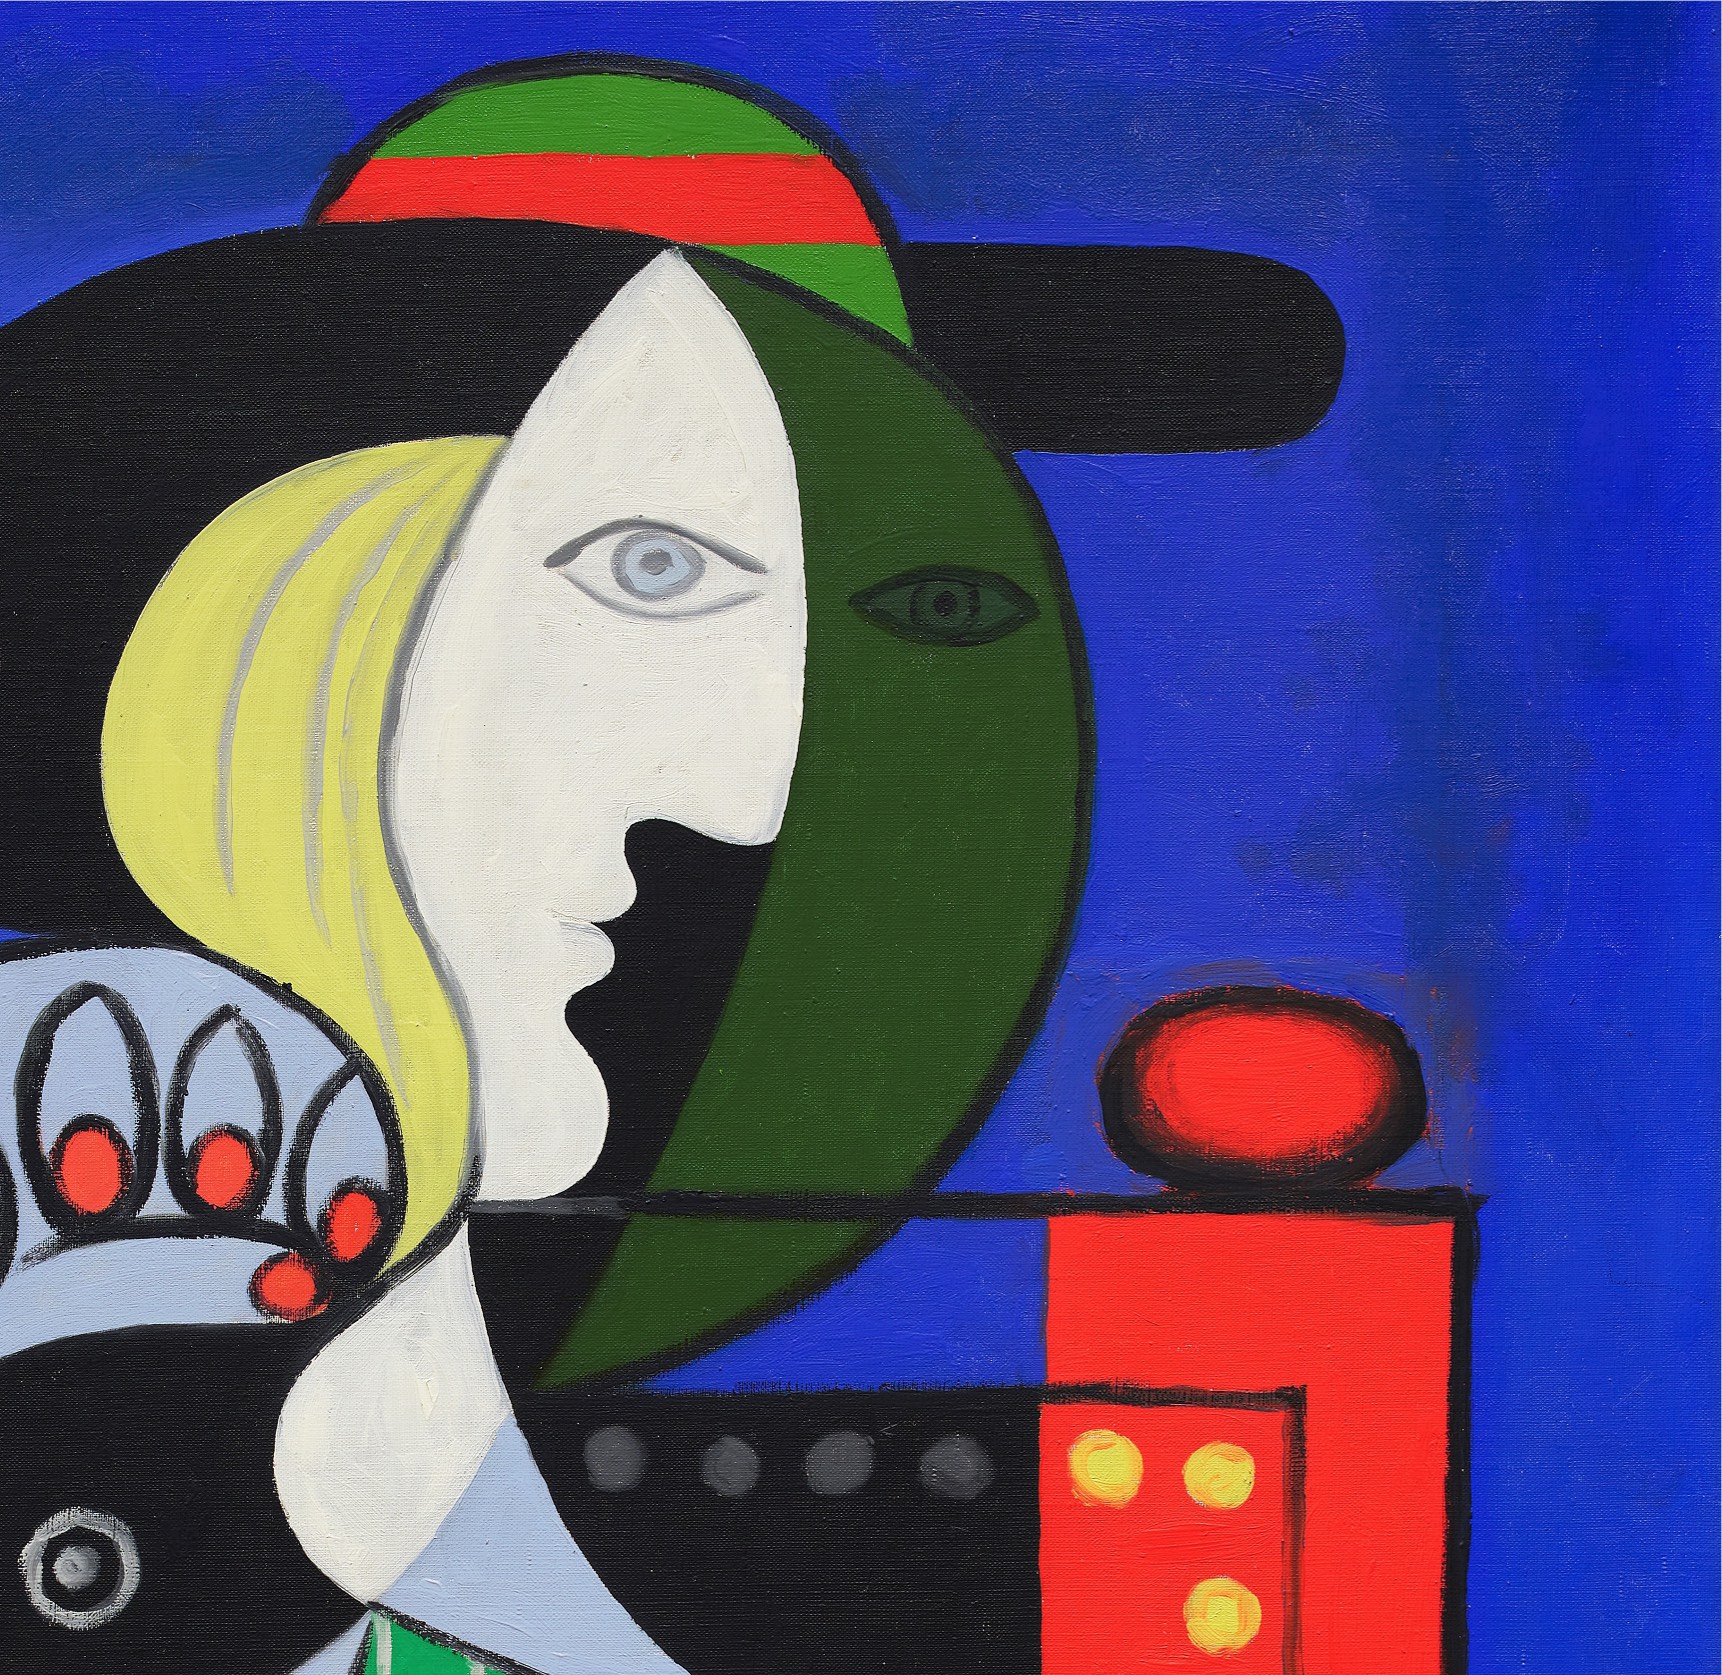 Картина Пабло Пикассо «Женщина с часами» ушла с молотка за 139,4 млн  долларов — что на ней изображено — Сноб